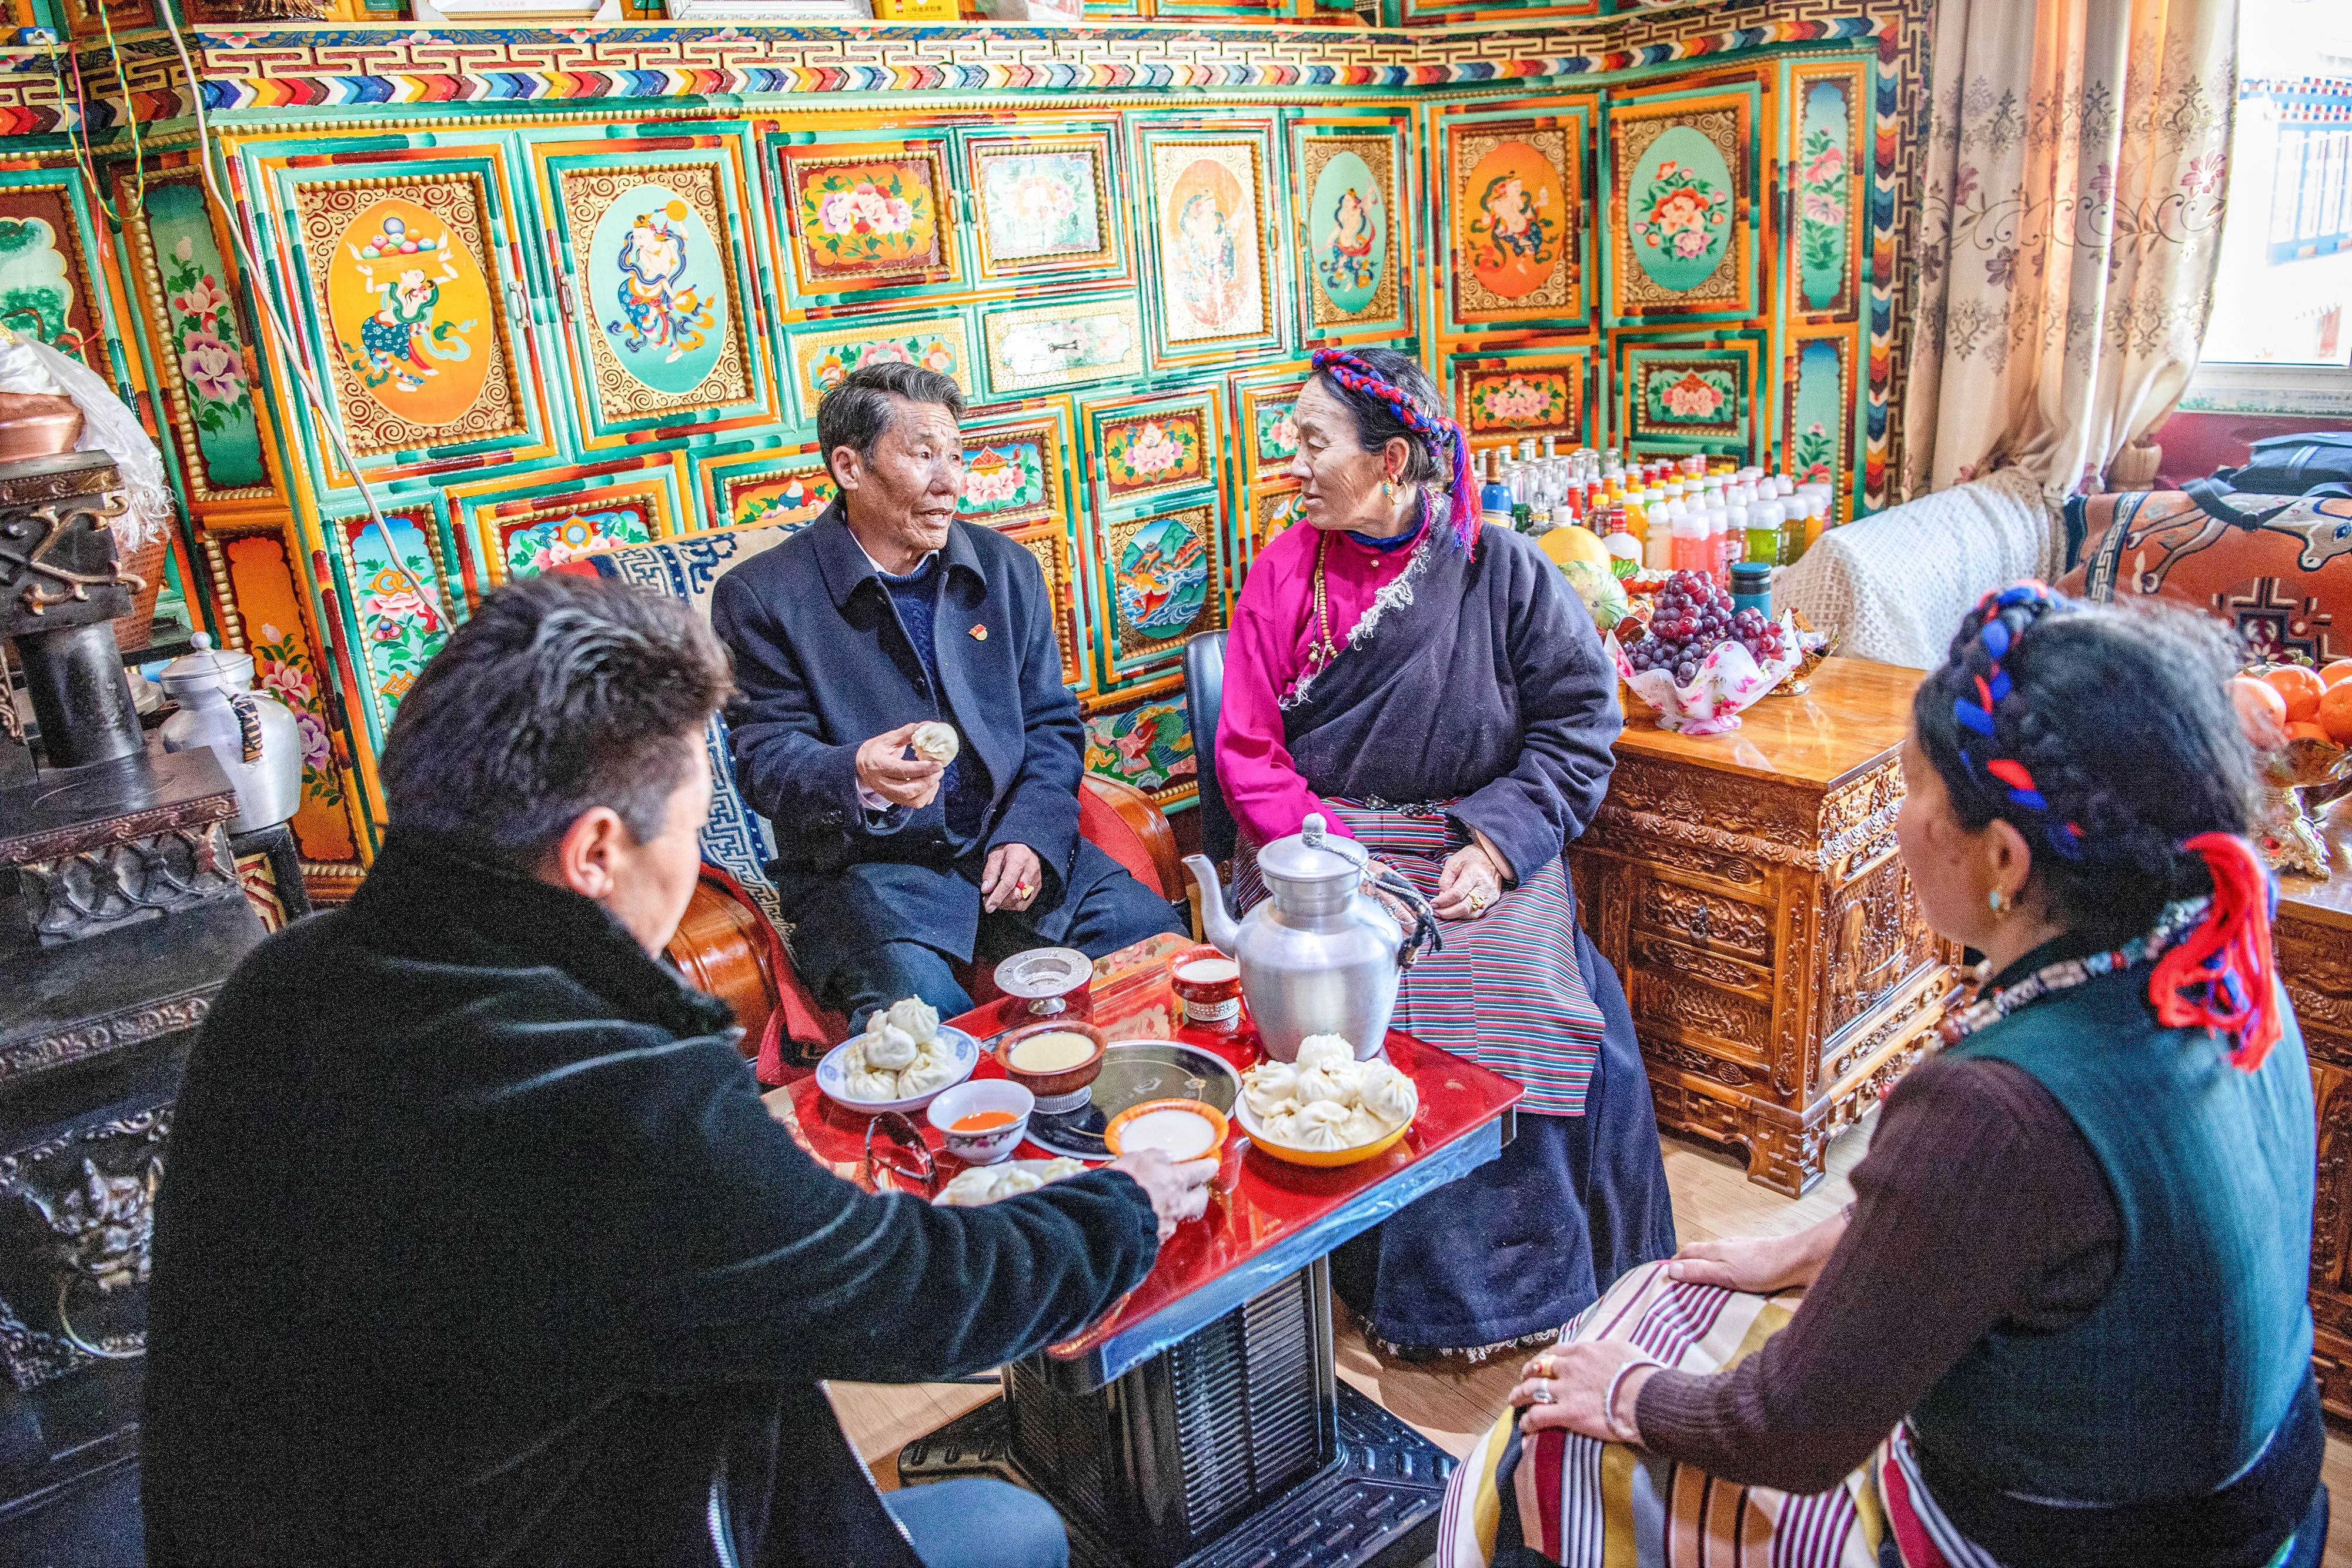 新华社照片，拉萨，2021年4月14日 苦难和新生——西藏翻身农奴影像档案：洛松朗加 洛松朗加（左二）和家人一起吃饭（2月19日摄）。 洛松朗加家住西藏昌都市左贡县旺达镇列达村，从六七岁有记忆开始，洛松朗加的生活里就只有给农奴主放牛、拾柴火和捡牛粪。 家里7口人，只有1亩多地，还要交沉重的赋税，农奴稍一做错事就会被打。小时候的洛松朗加，曾亲眼看到过爷爷被农奴主吊起来毒打。仅仅是外出打猎的收获不好，爷爷就被打了100大板，当场晕了过去，话都说不出来，身上的伤很久都好不了。“是后来解放军来了，才给爷爷治好了伤。”洛松朗加说。 民主改革后，工作组带领群众分田地、分住房。洛松朗加家里分到了12亩地、1匹马和5头牛。除了终于拥有了自己的生产资料之外，洛松朗加“最大的感受是自由”。“想说什么就可以说什么，想做什么就可以做什么。自己的牛可以自己养，自己的地也可以自己种，收成都是自己的。”洛松朗加的回忆中充满了幸福。 1961年，12岁的洛松朗加第一次走进了乡里的学校。1964年，他又考入了县城里的小学。长大后，他从一名基层干部开始，不断成长进步。 在基层工作了一辈子，洛松朗加最为自豪的就是自己为群众真正做了些事。二十世纪八十年代末到九十年代初，他在县农牧局工作时，主持了推广冬小麦的工作，让左贡冬天的农田不再闲置。有些农民一开始不相信冬天地里也能长粮食，他就一家一家去做工作，发动党员率先试种。一些偏远的村庄路途遥远，他和干部们就自己带被褥、口粮，坚决不为群众家里多添一张吃饭的嘴。他还参与过“藏青320”等青稞新品种的推广工作，县里的青稞亩产量增长了约五成。 “以前农奴主名义上是地方管理者，但他们都是为了自己的利益，制定的政策都是为了壮大自己的家族，哪管农奴的死活。”洛松朗加感慨地说，“但共产党的官是为老百姓当的，心里装的永远是人民！” 新华社记者 孙非 摄